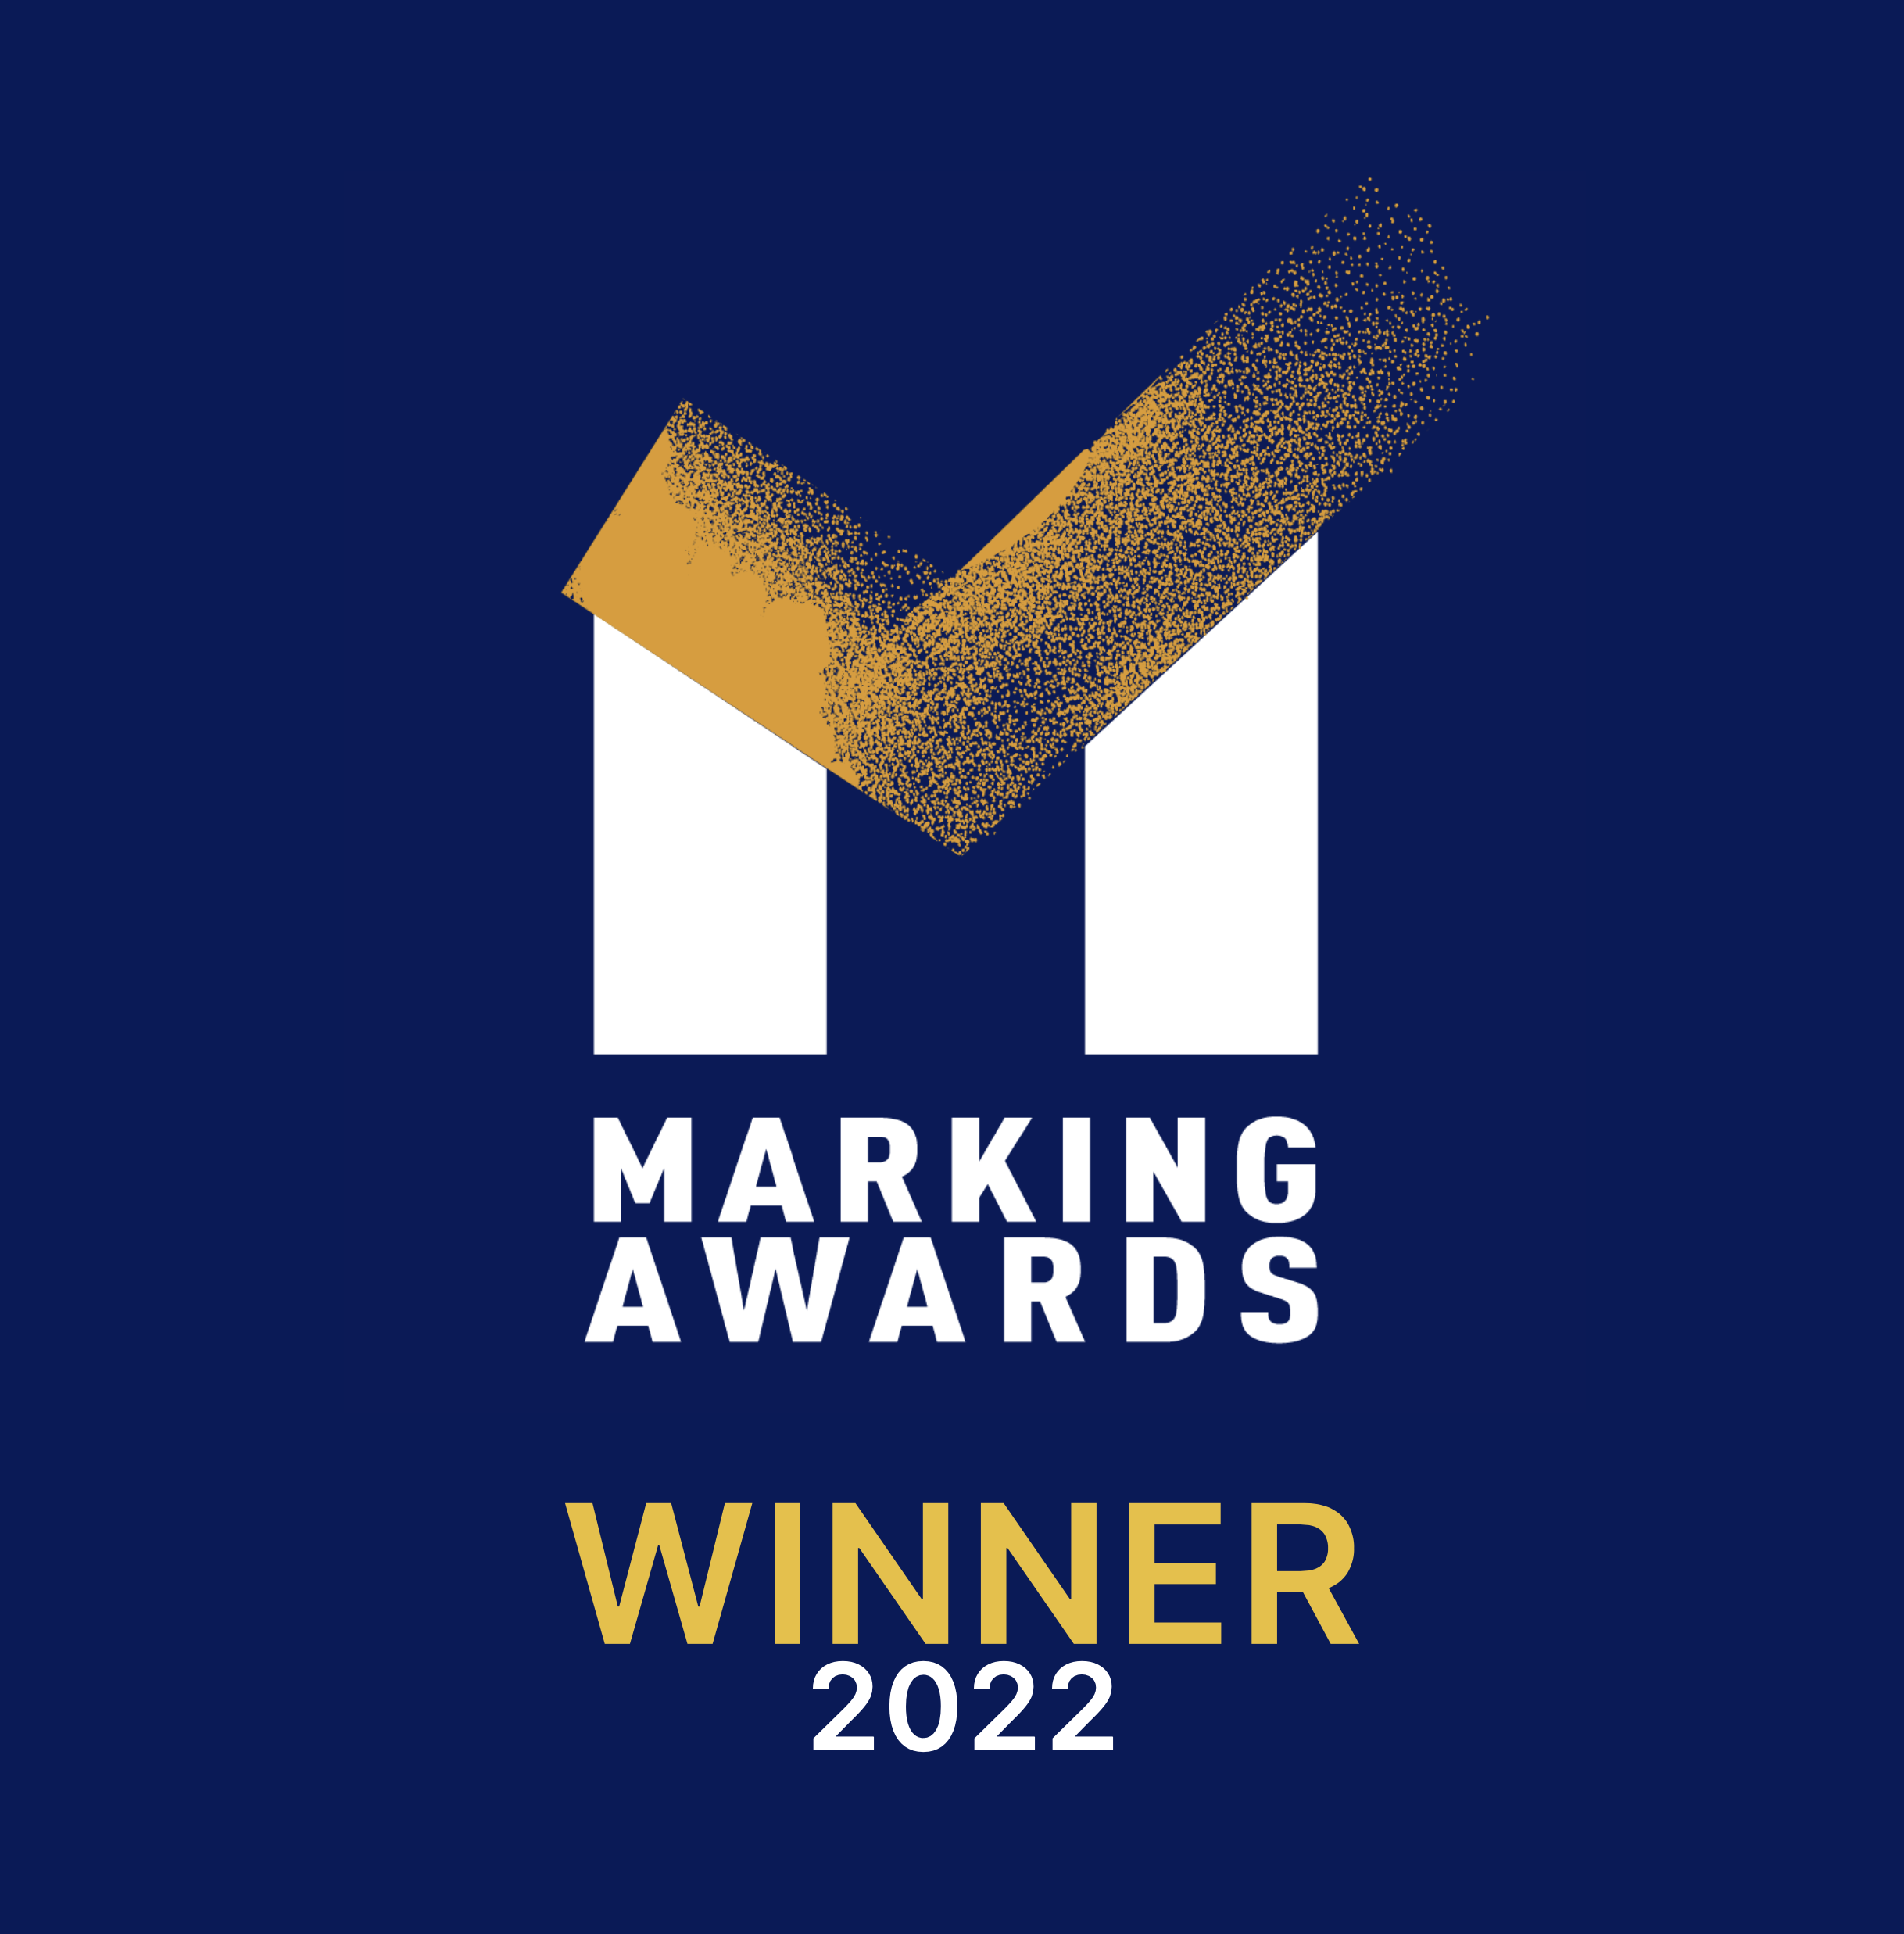 Marking Awards winner for Stamatakis Bakery